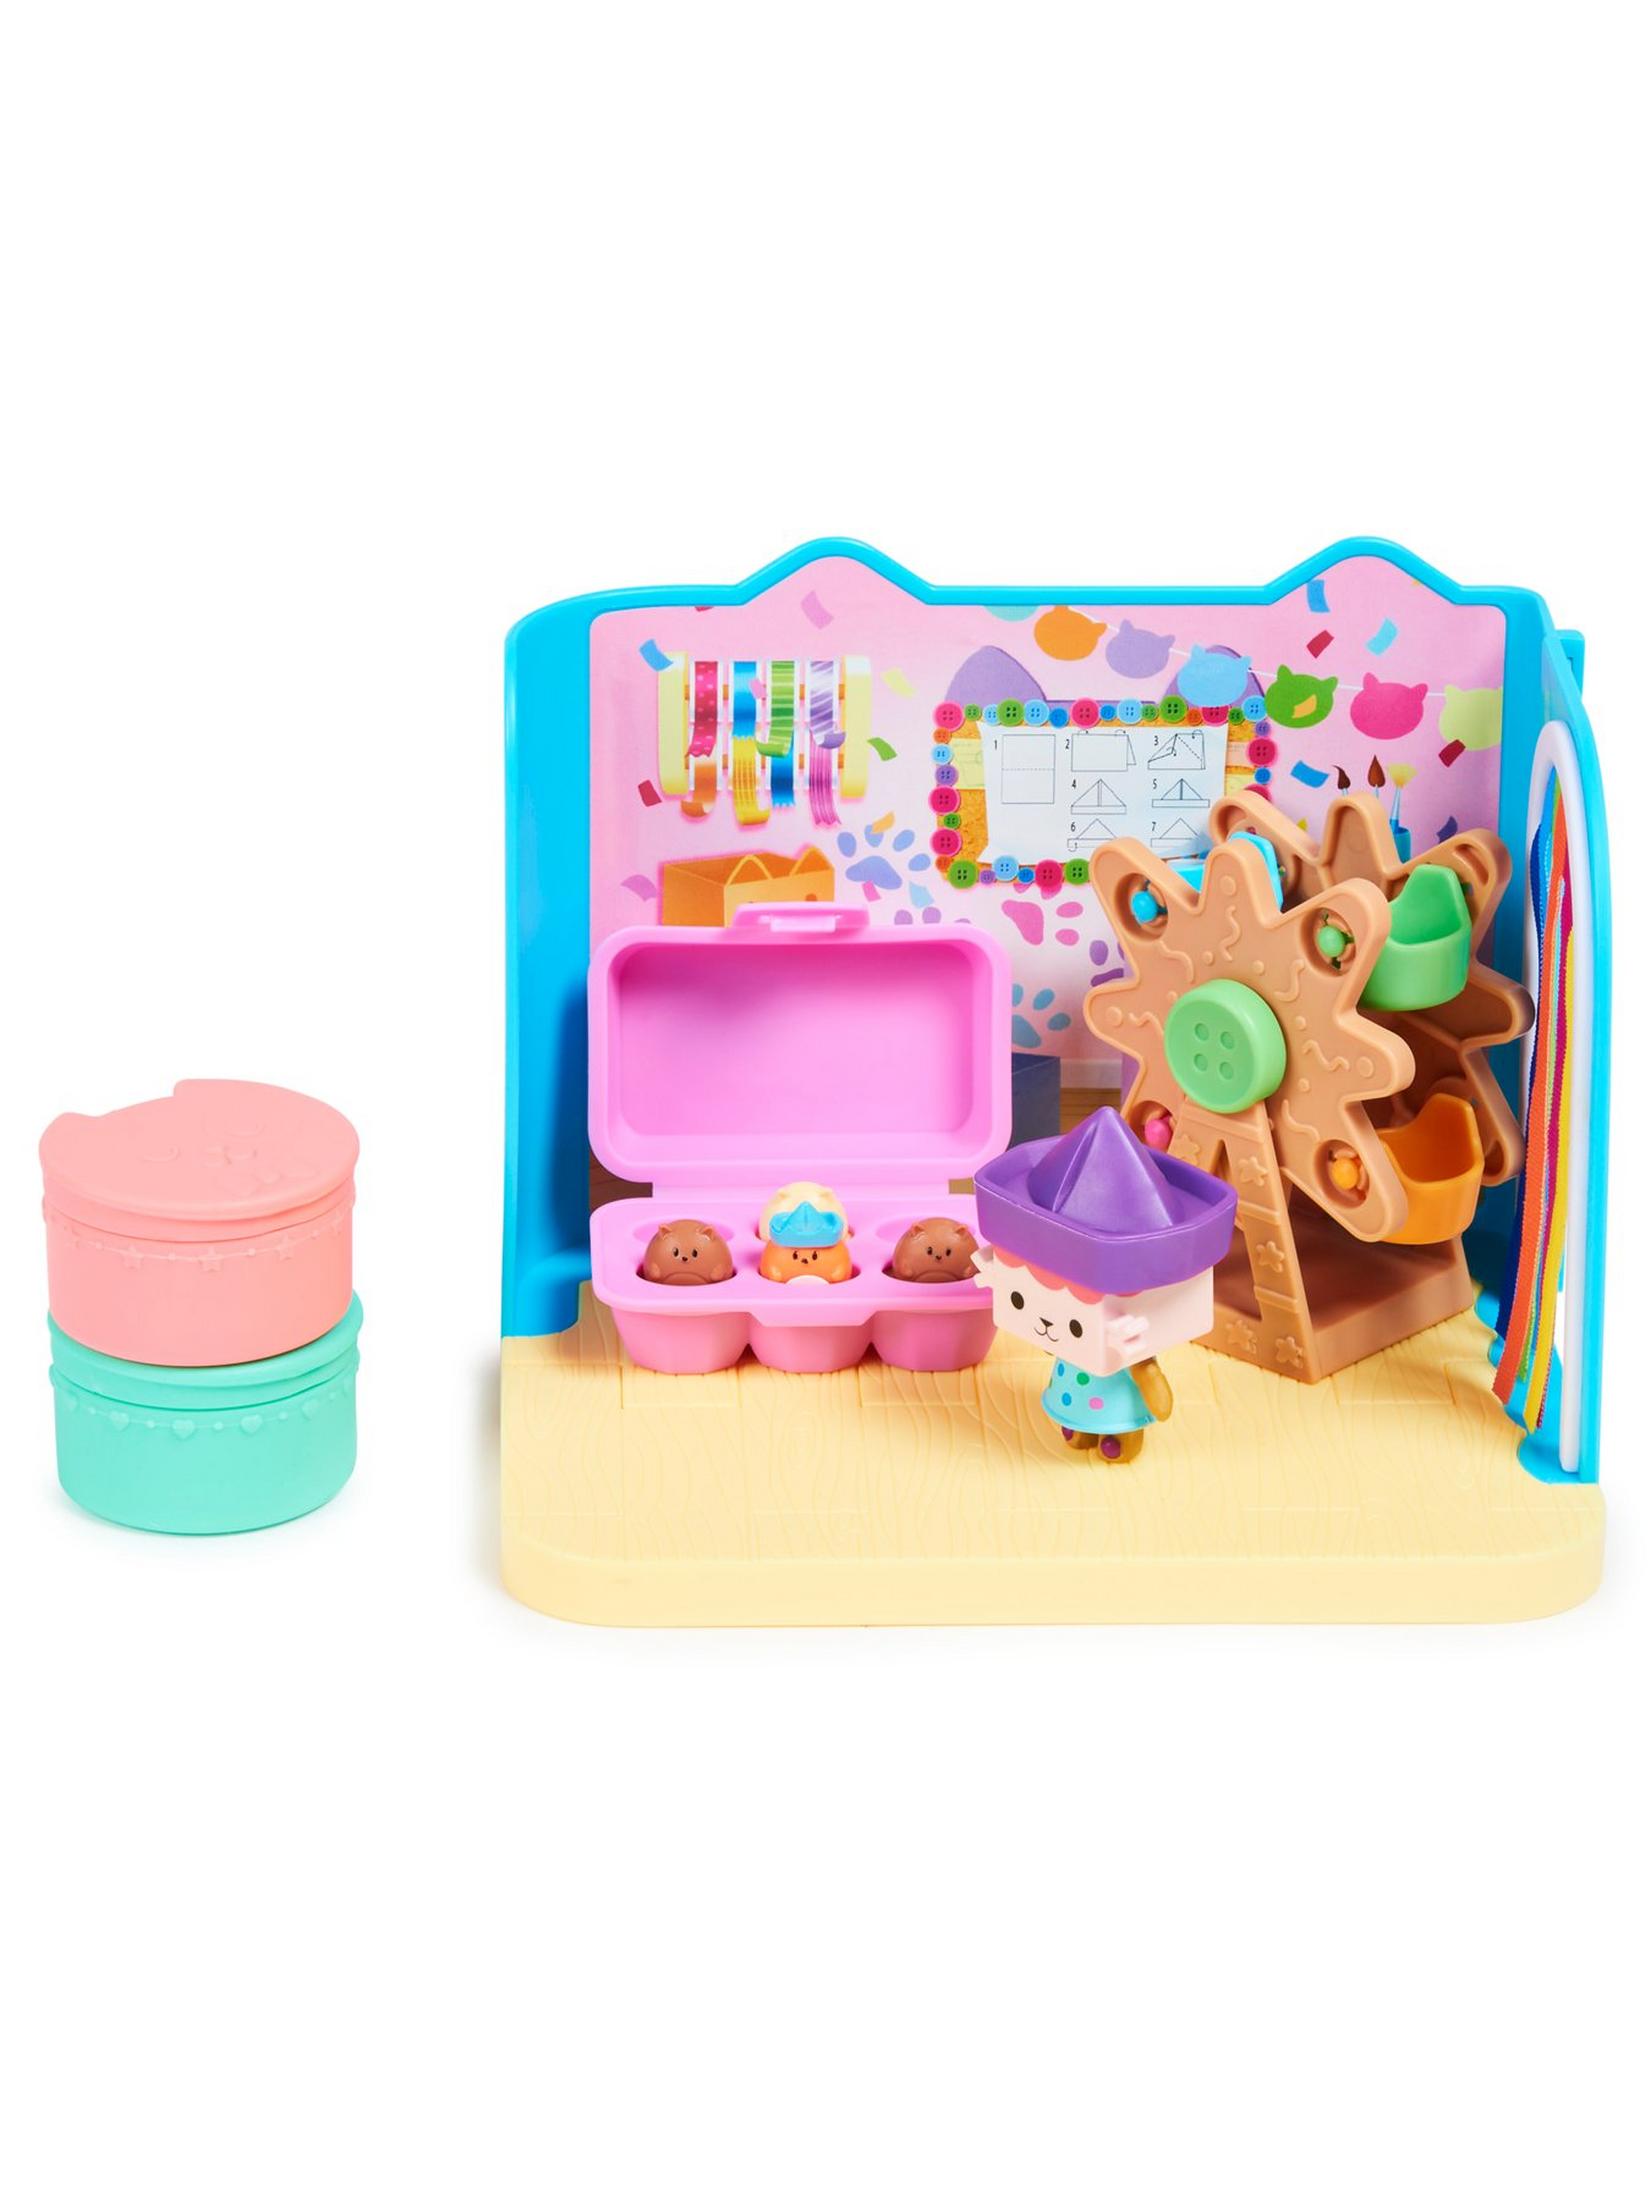 Gabby's Dollhouse, Gabby and Friends - Juego de figuras con muñeca Rainbow  Gabby, 3 figuras de juguete y accesorio sorpresa para niños a partir de 3